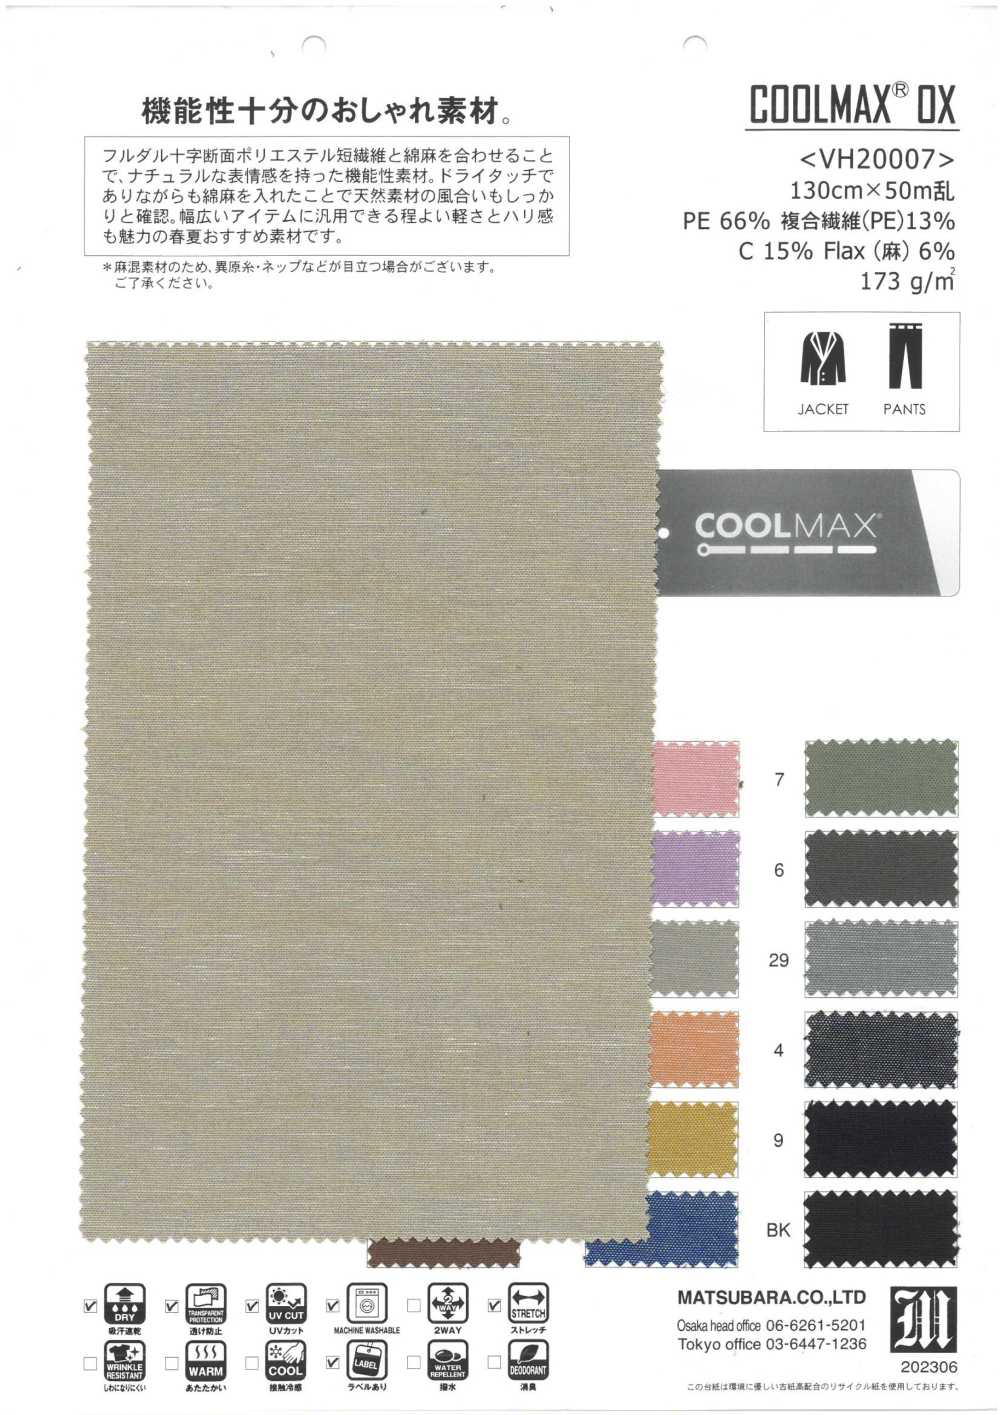 VH20007 COOLMAX® OX[Fabrication De Textile] Matsubara